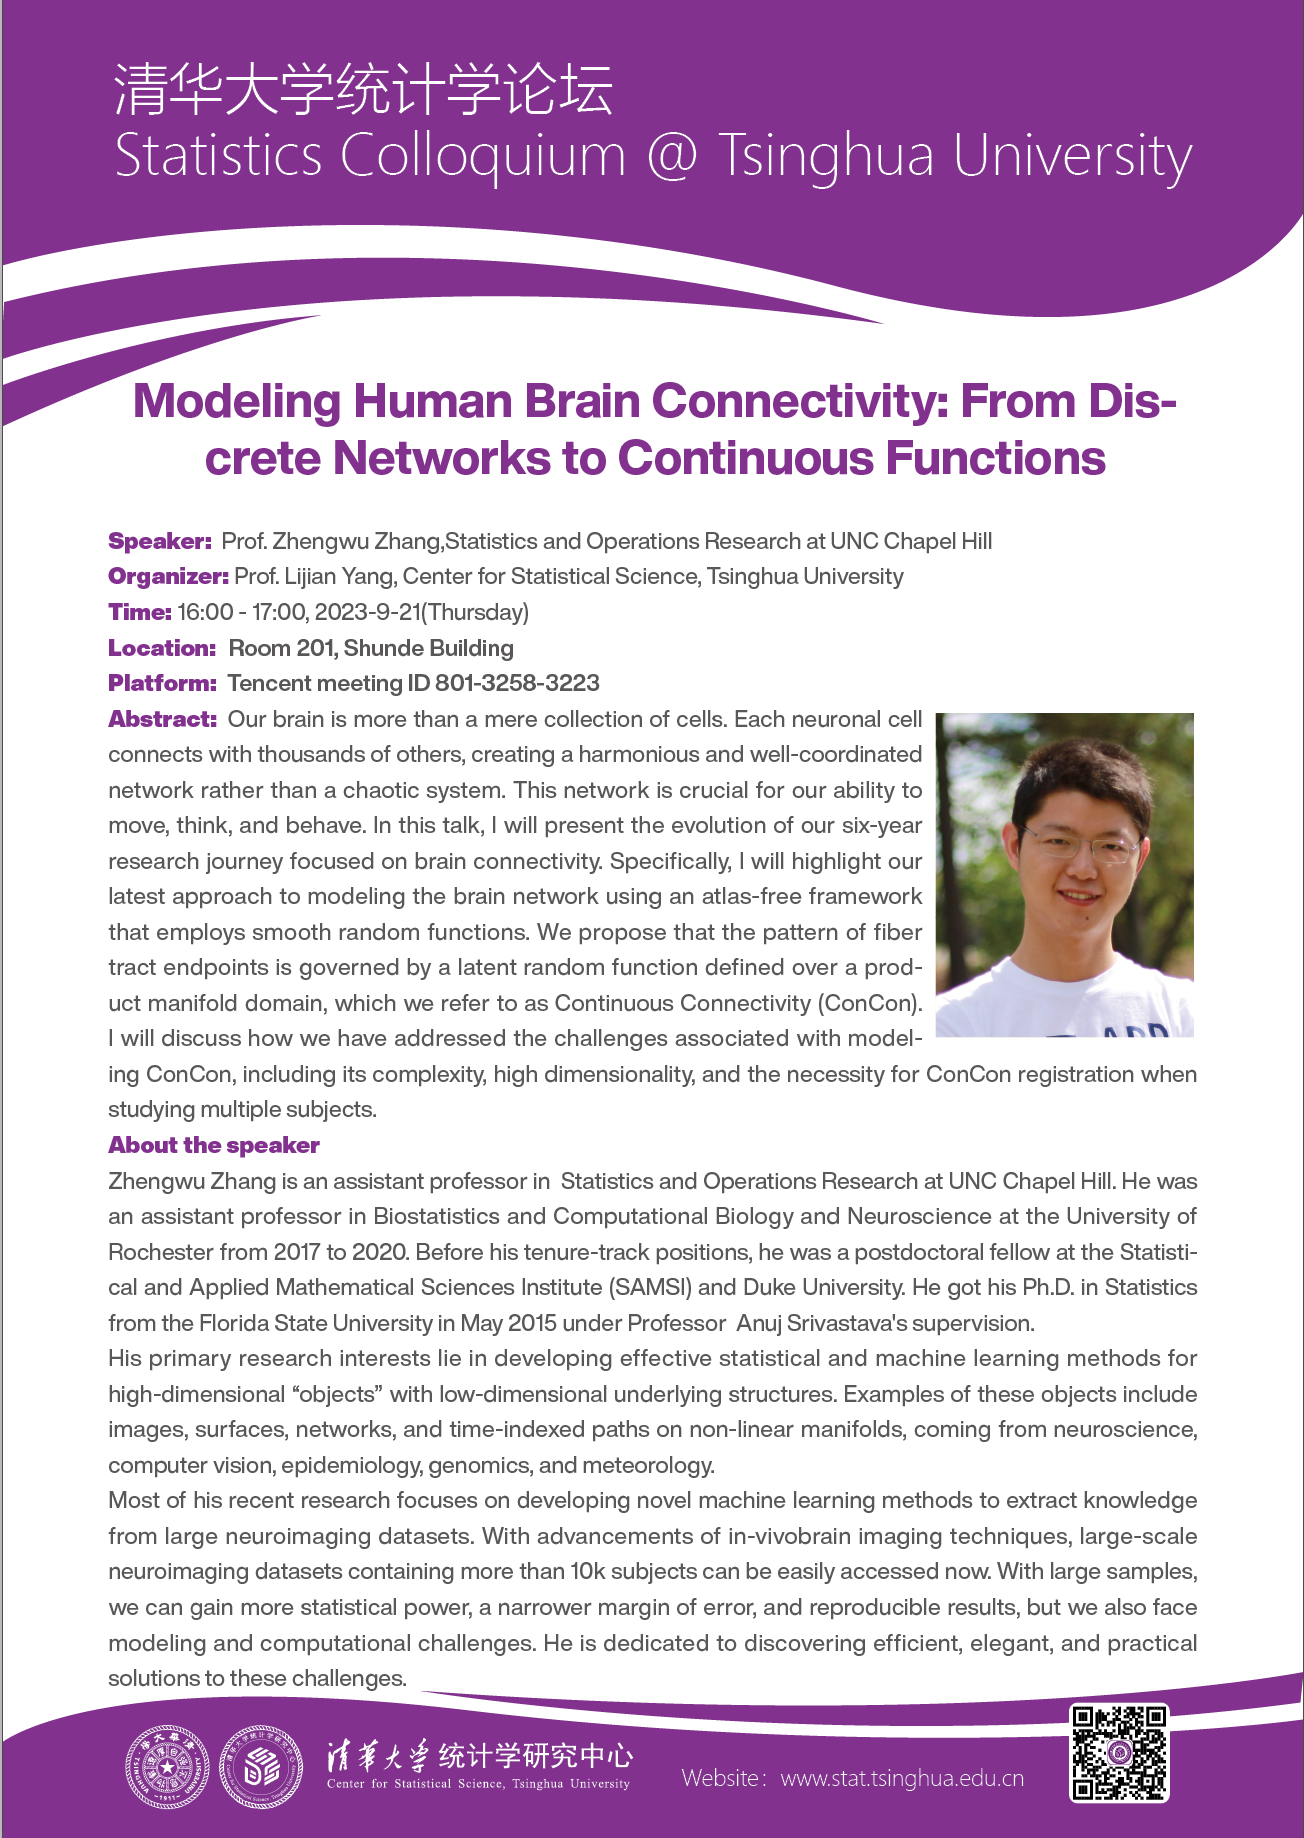 【统计学论坛】Modeling Human Brain Connectivity: From Discrete Networks to Continuous Functions